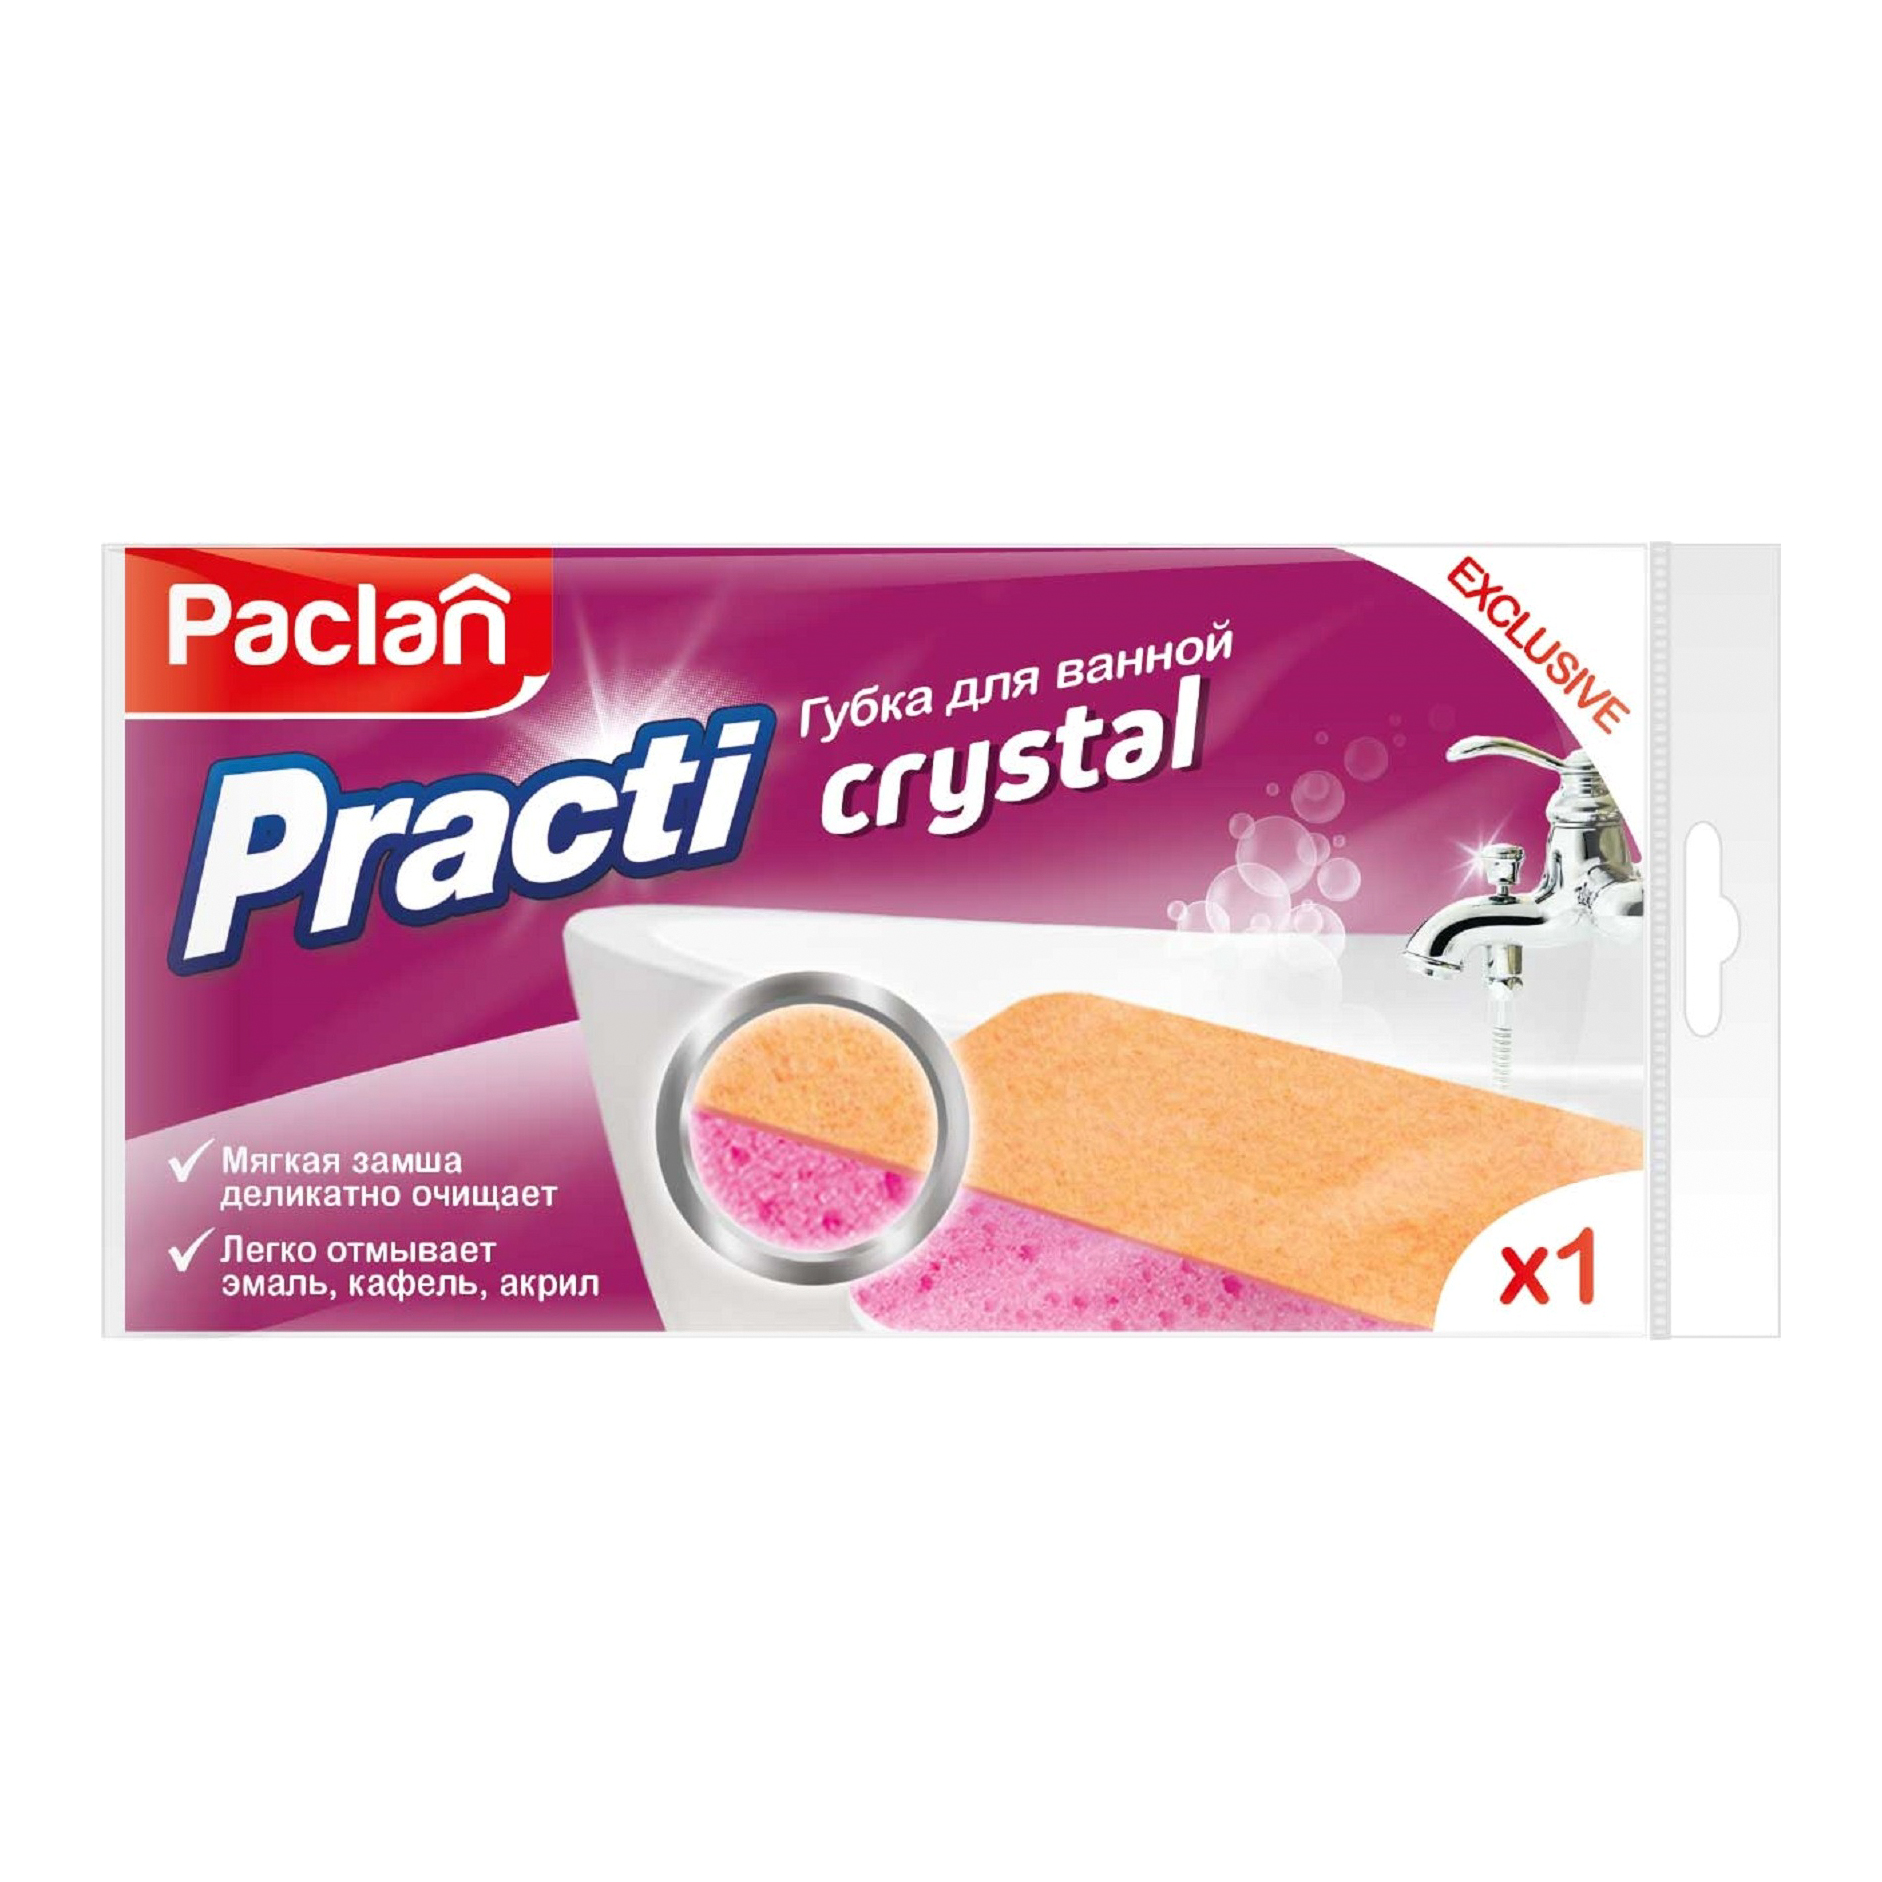 Губка для ванной Paclan Practi Crystal aquael губка для unifilter 750 1000